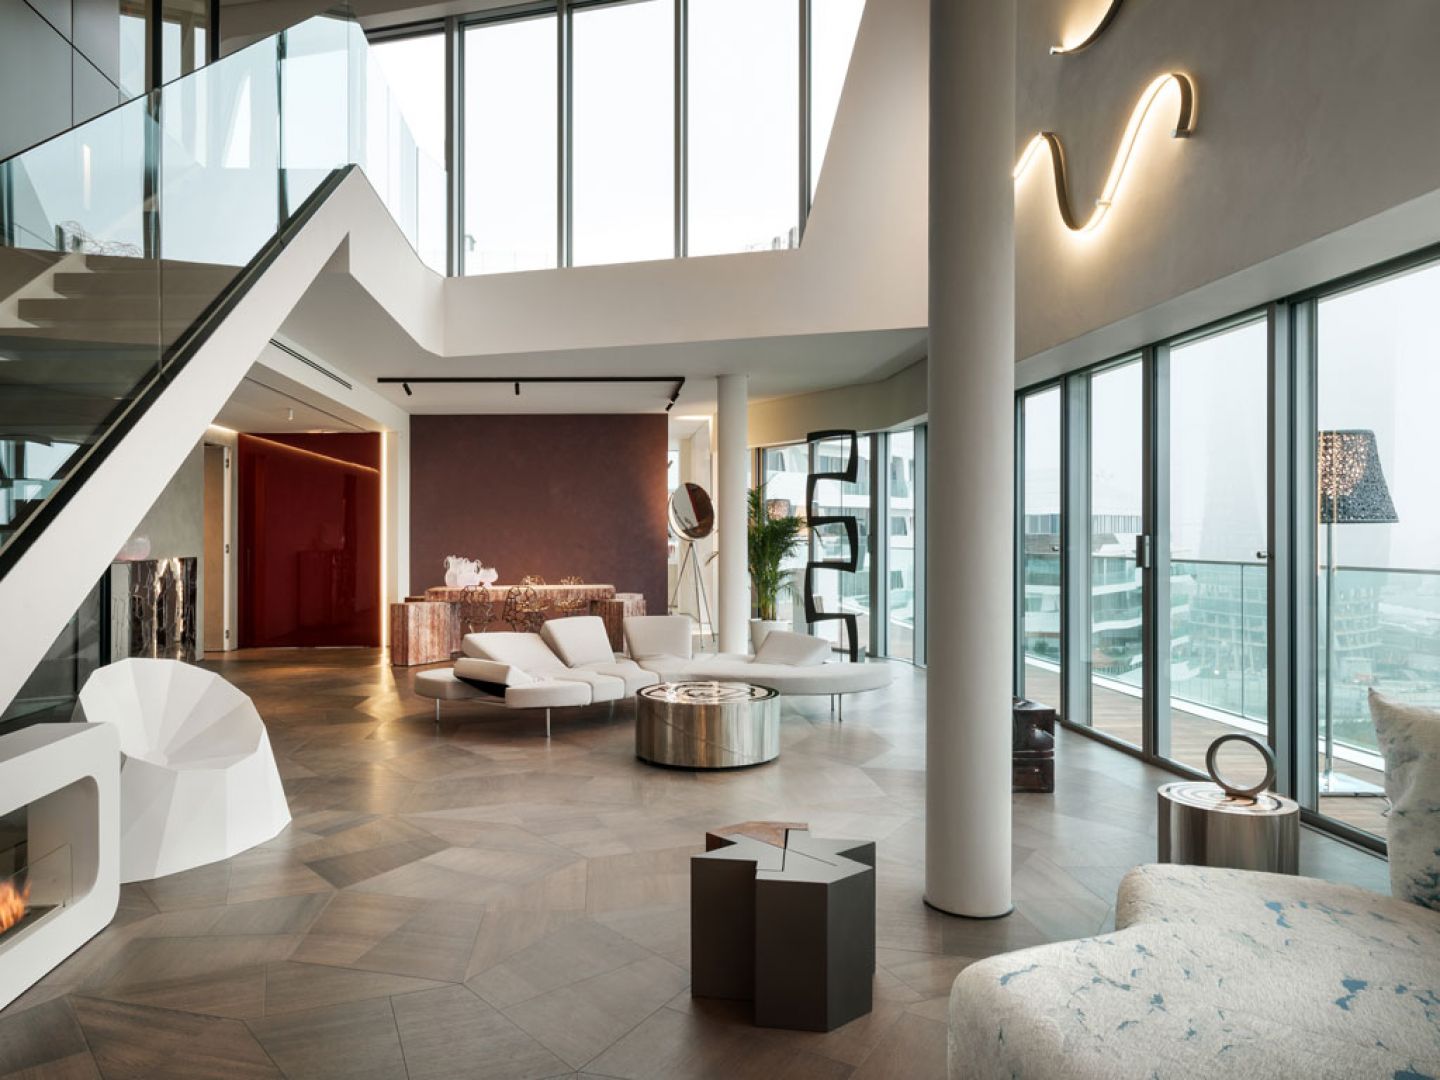 Wnętrza penthouse’u One-11, zaprojektowane przez Zaha Hadid Architects, są przykładem stonowanego luksusu, który opiera się na materiałach najlepszej jakości, wyważonym designie i jasno określonych proporcjach. Fot. Zaha Hadid Architects